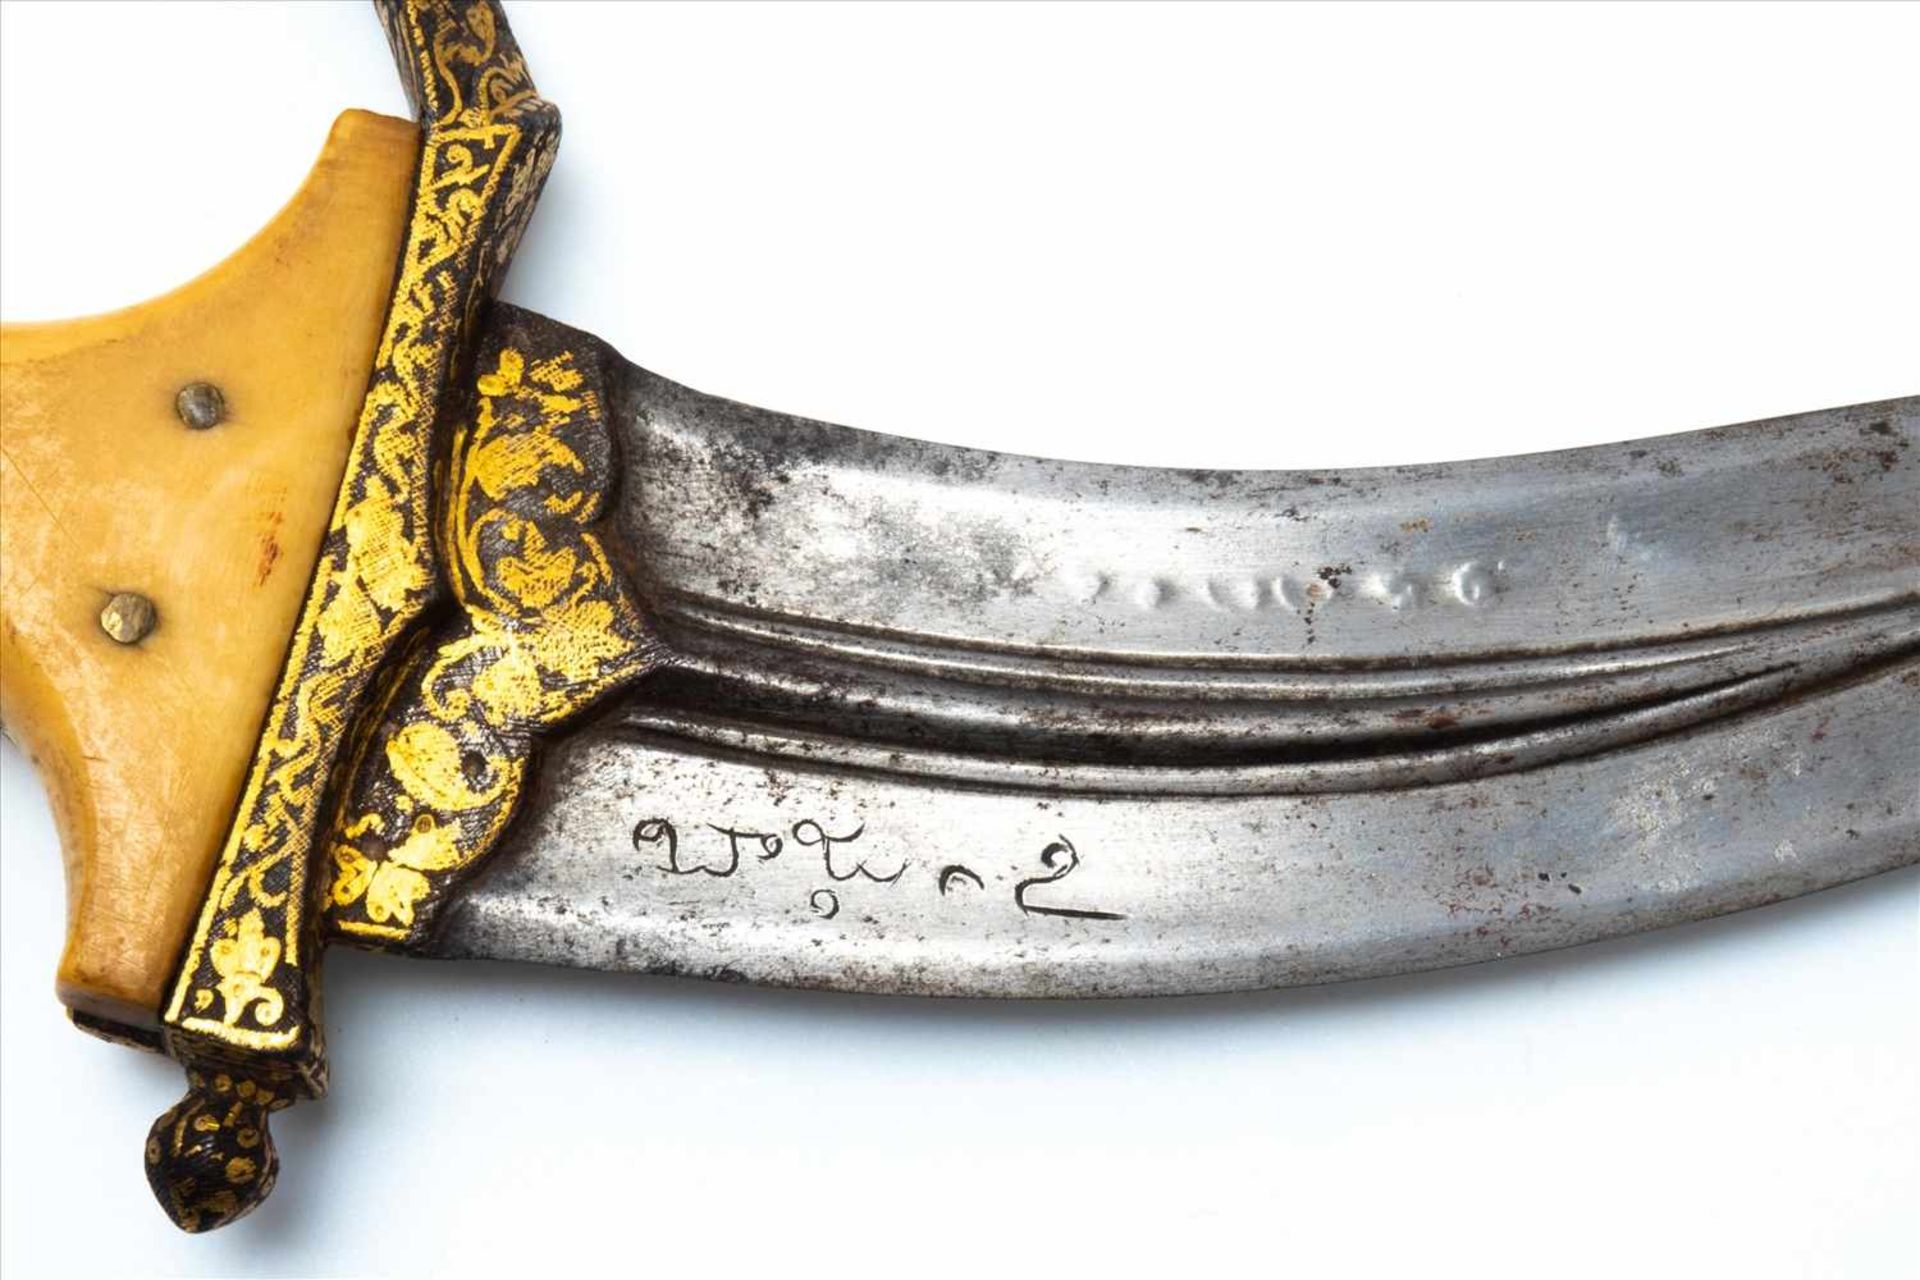 Vijayanagarìscher KönigsdolchSüdindien,17. Jh. oder früher, mit Beingriff, doppelter Klinge, sign. - Bild 3 aus 5